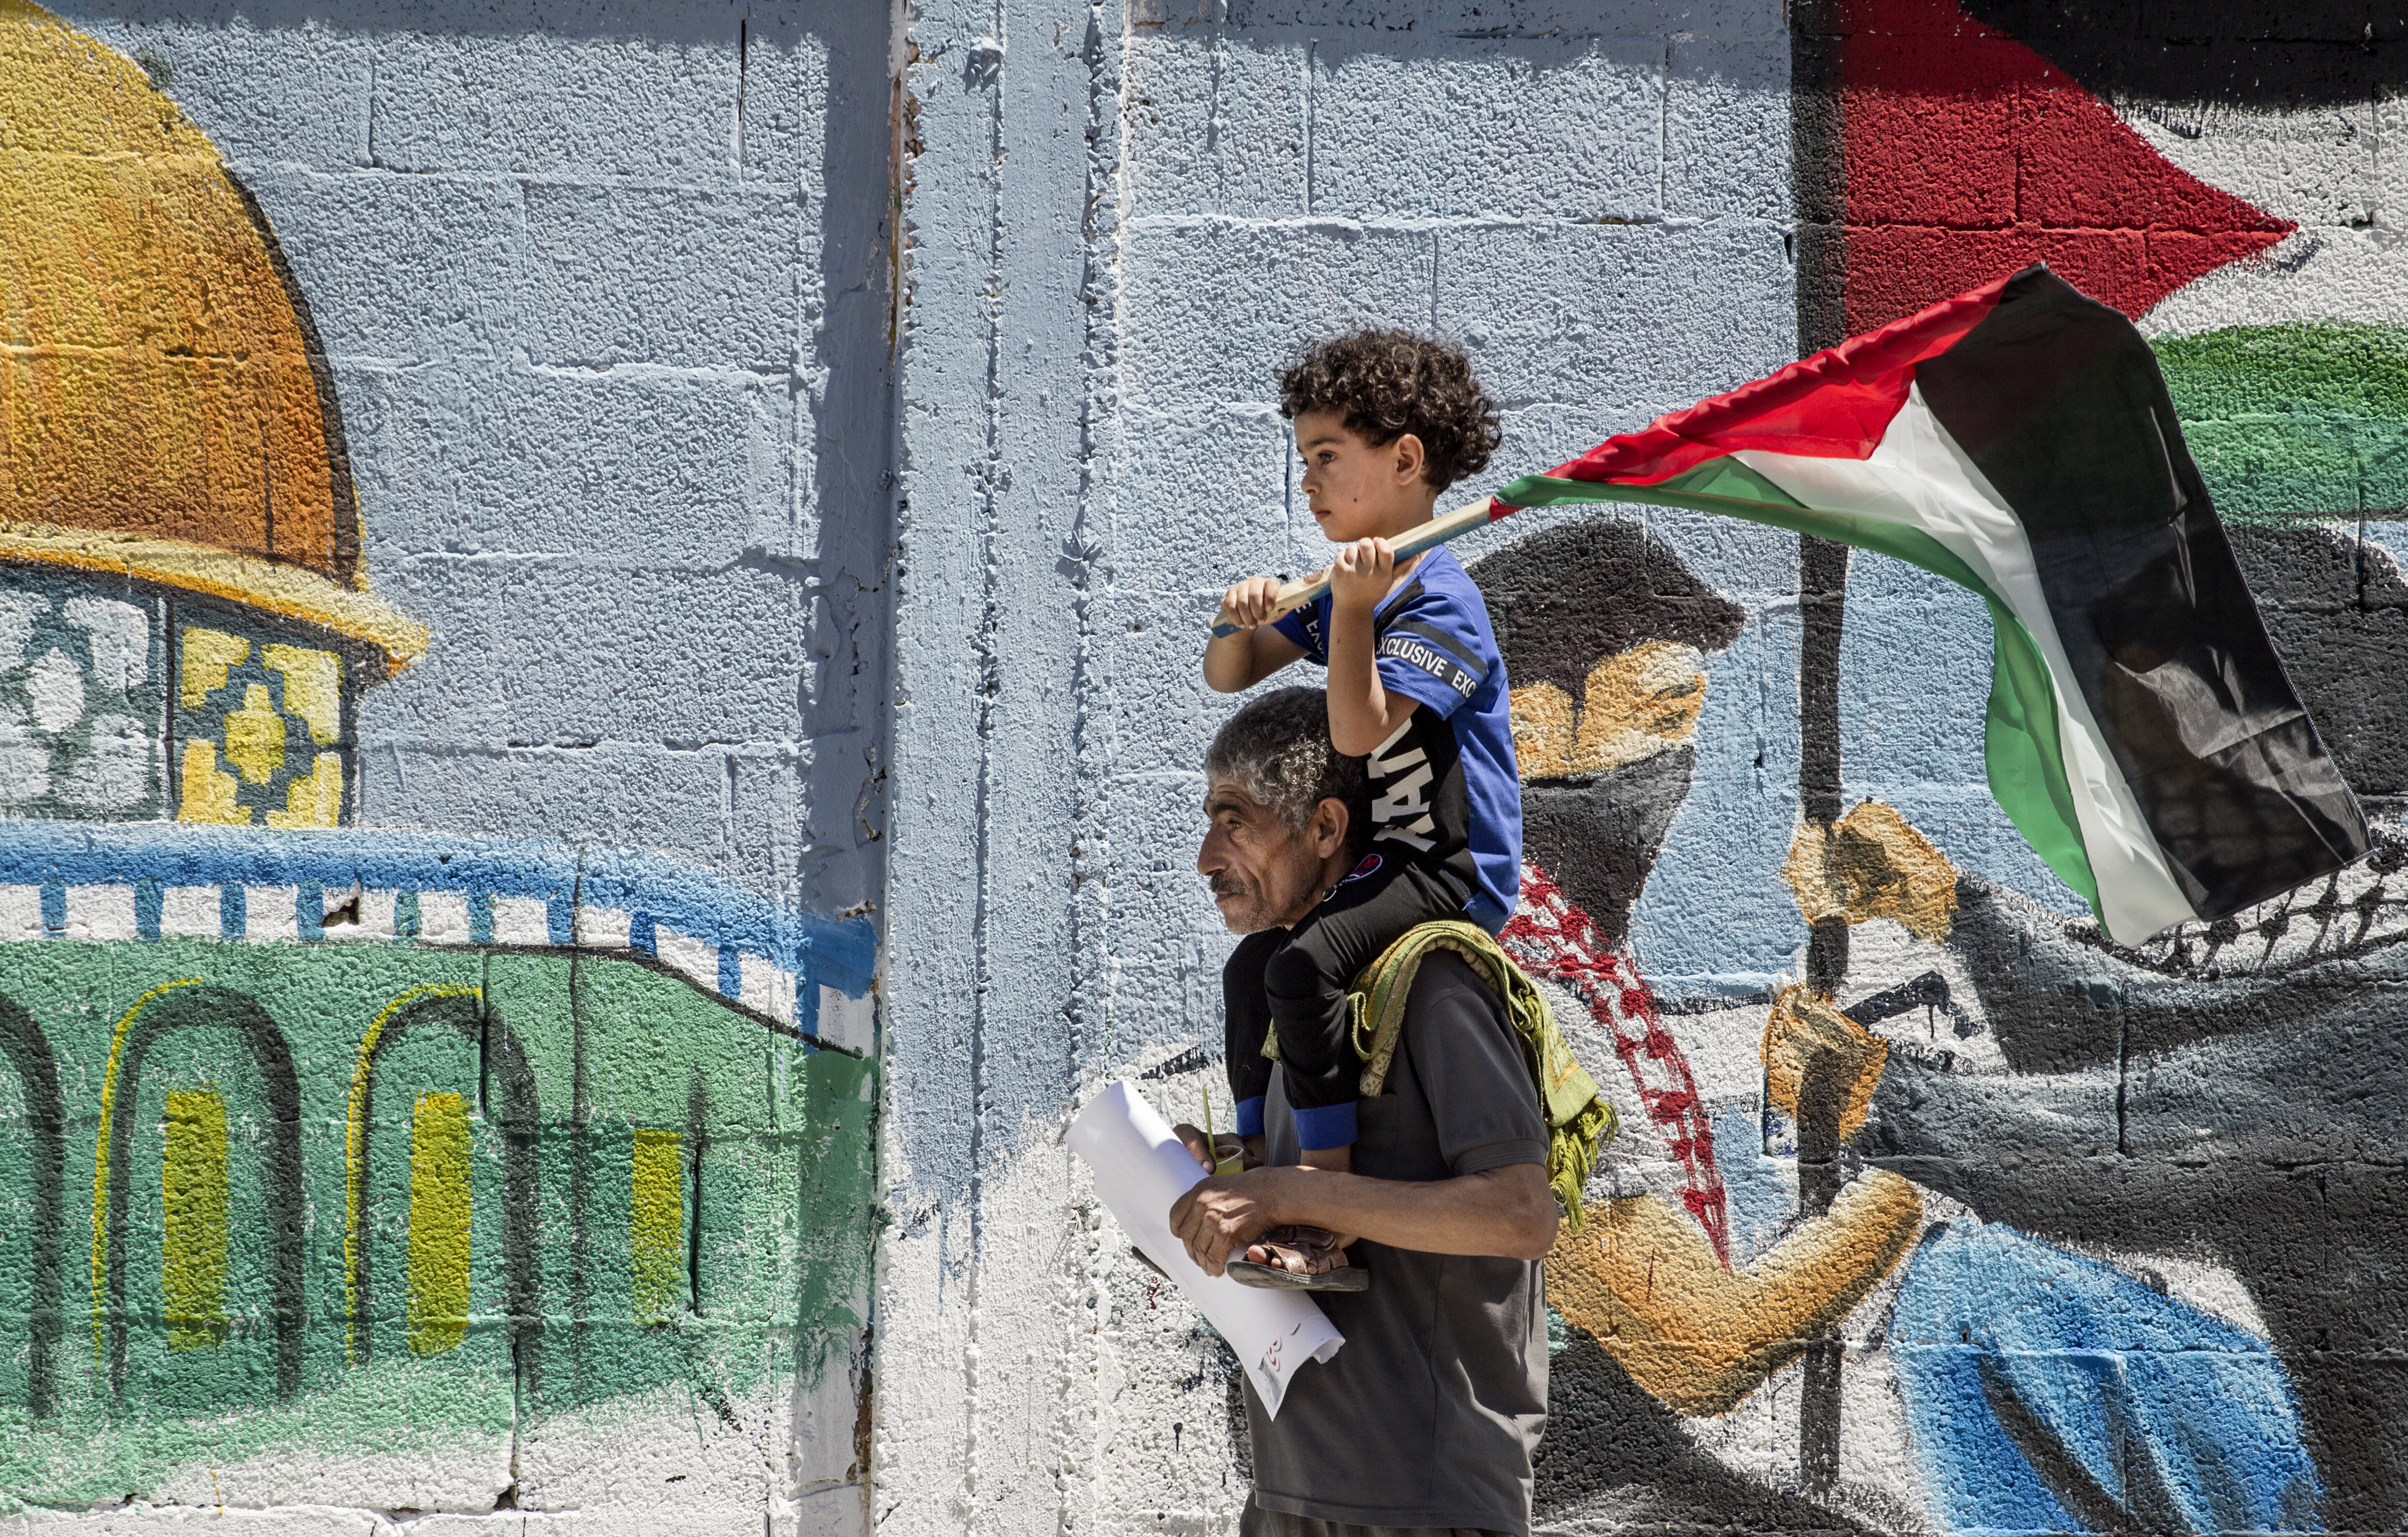 Palestine's Struggle to Create Its Unique Narrative